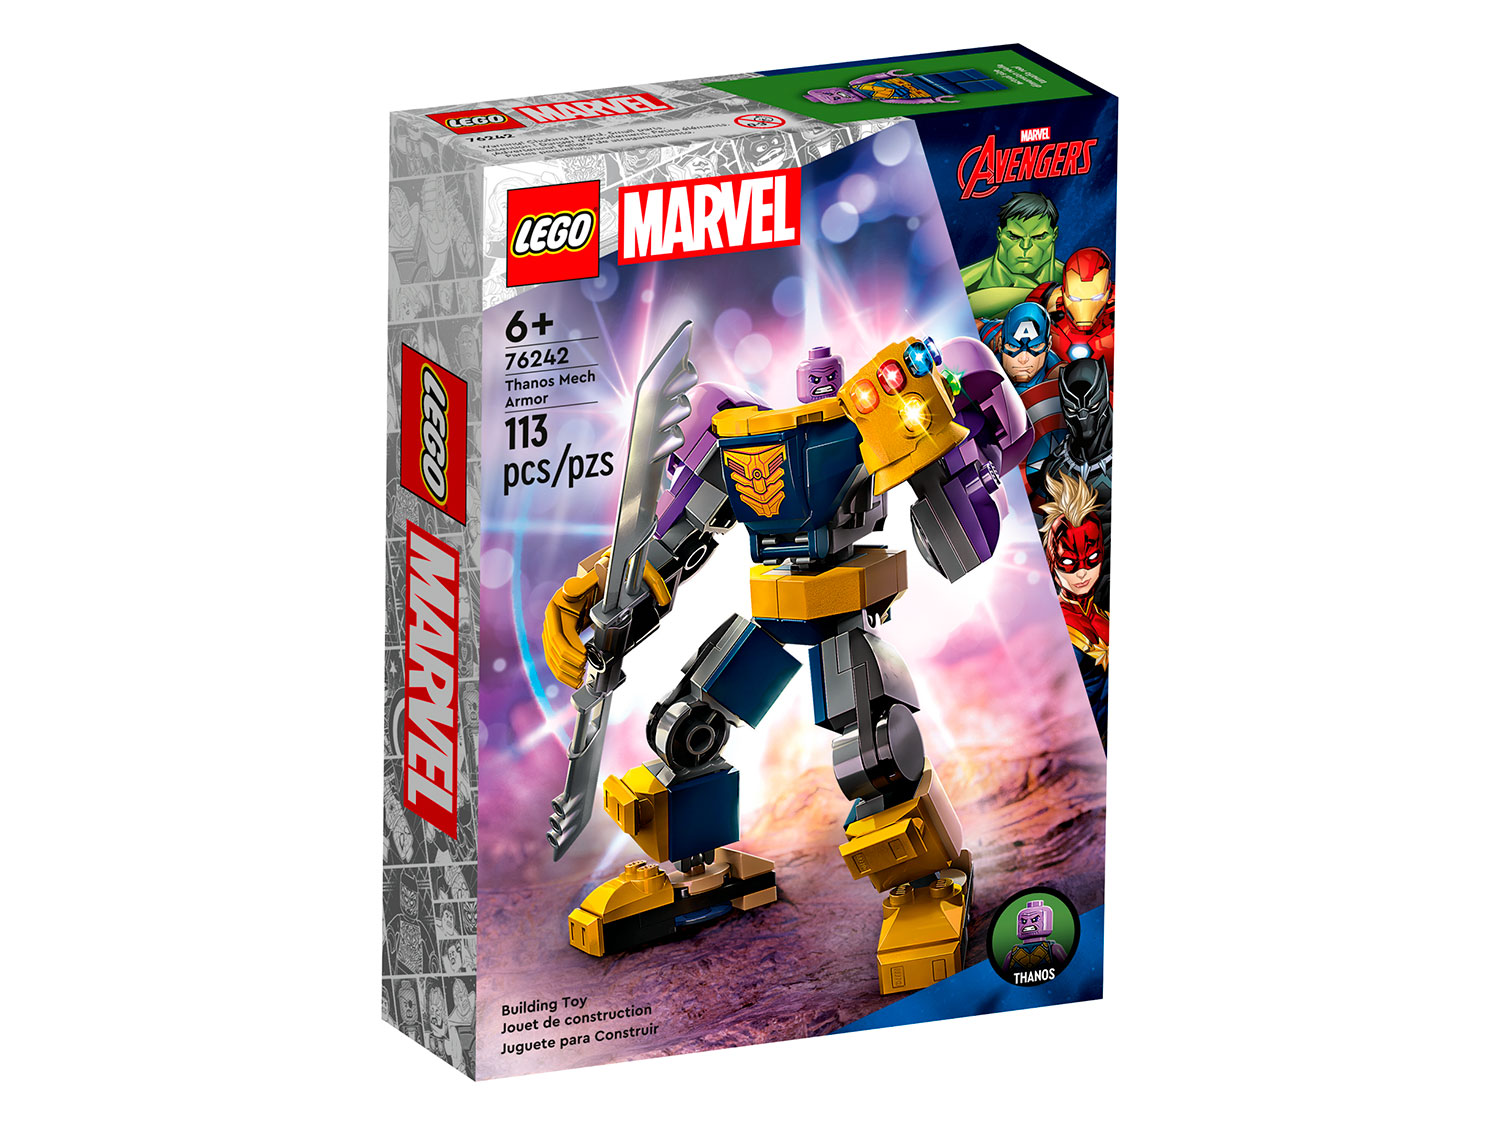 Конструктор LEGO Marvel Танос: робот, 76242 конструктор lego marvel avengers movie 4 76186 корабль чёрной пантеры дракон 202 детали